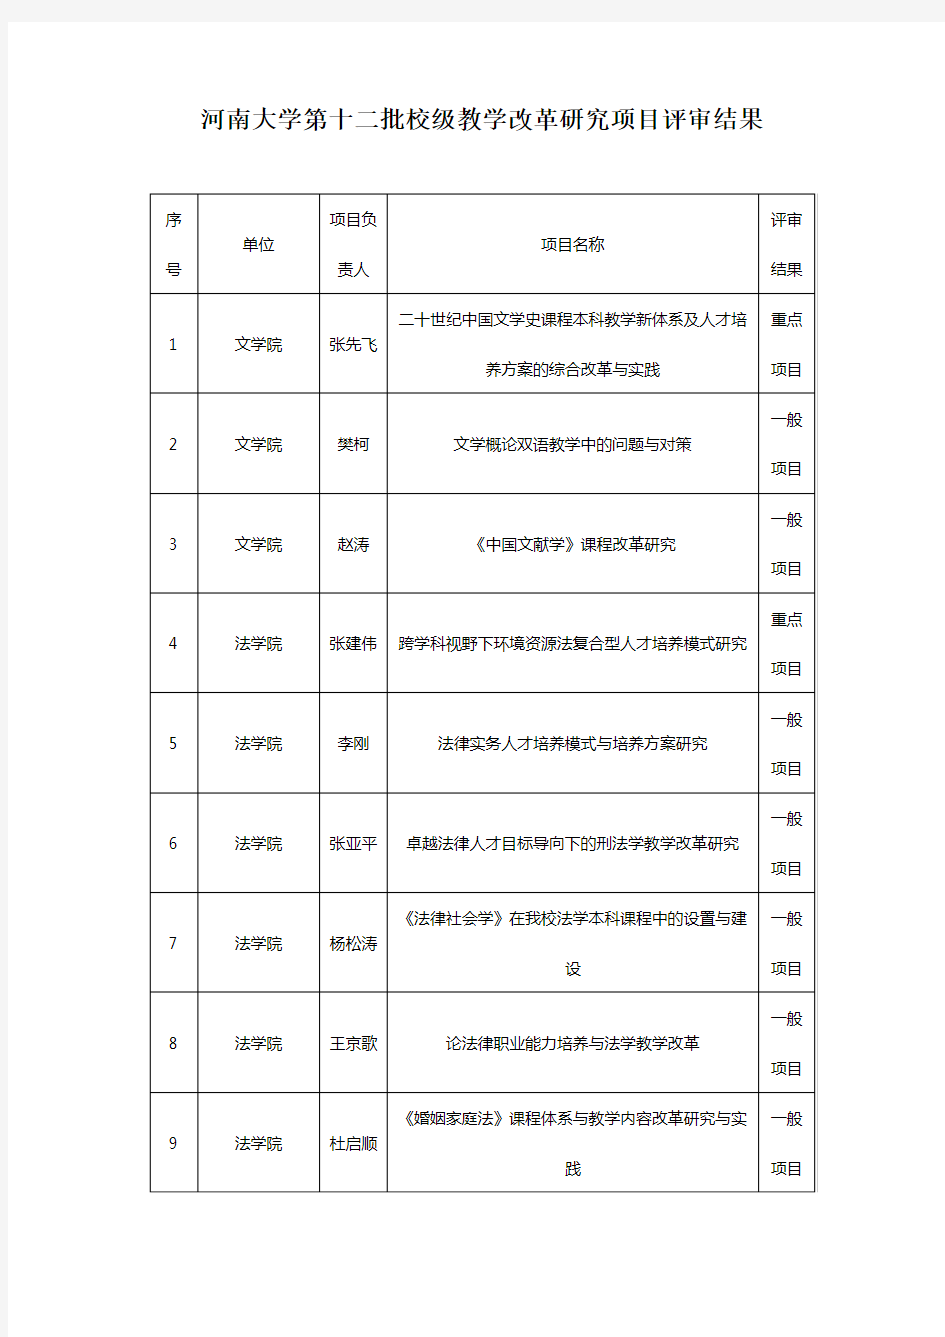 河南大学第十二批校级教学改革研究项目评审结果教学文稿